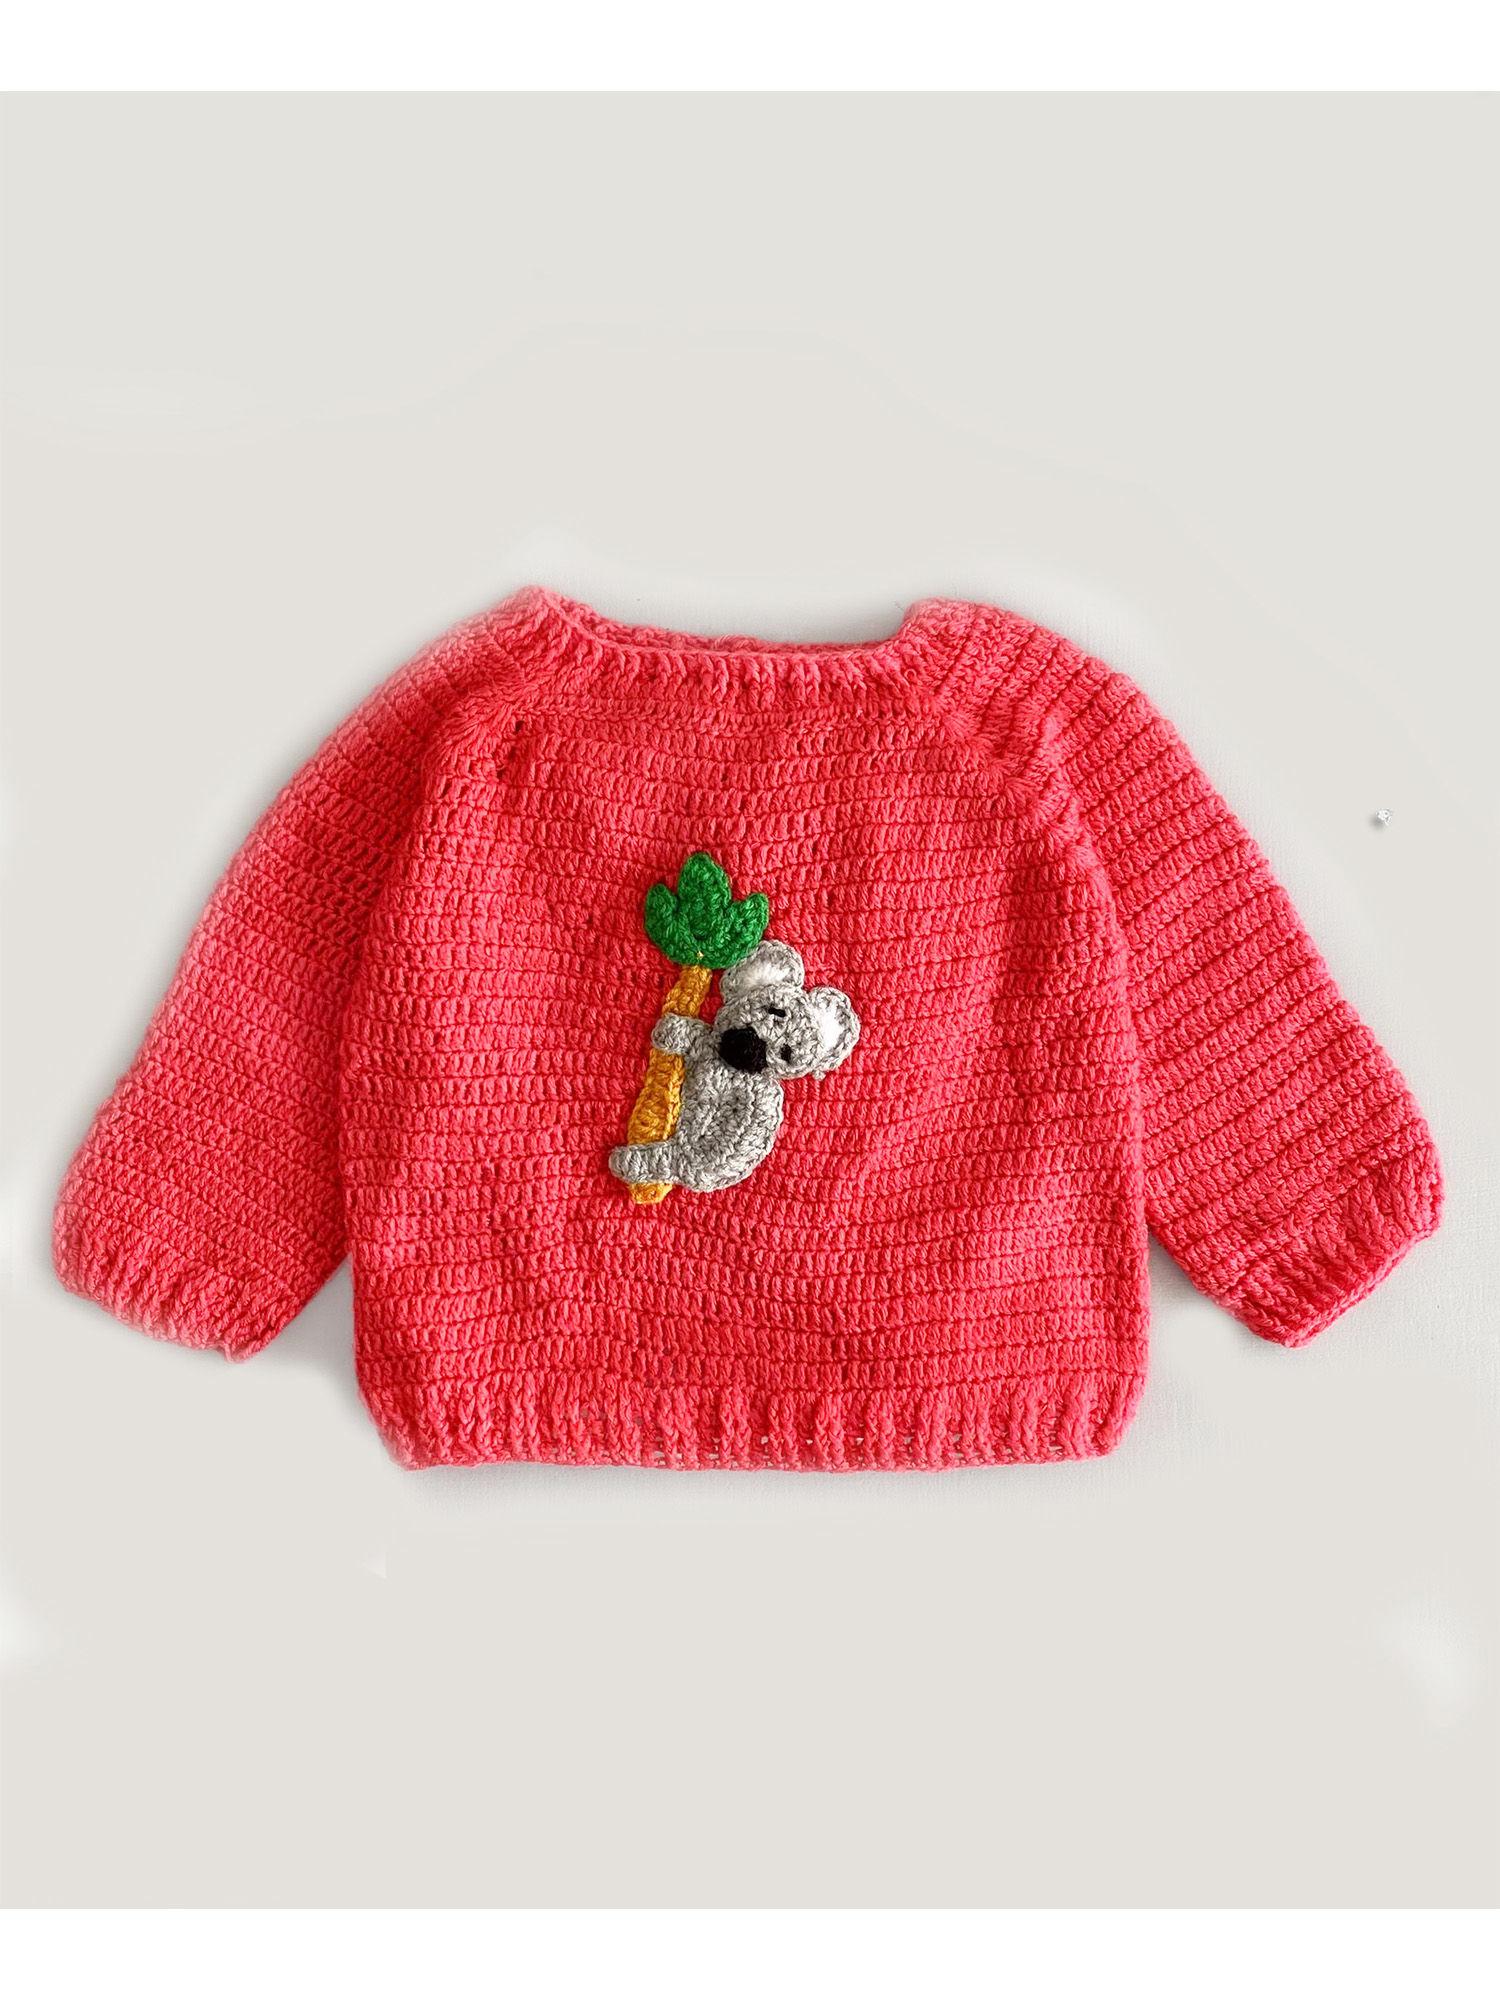 panda knit hand made sweater